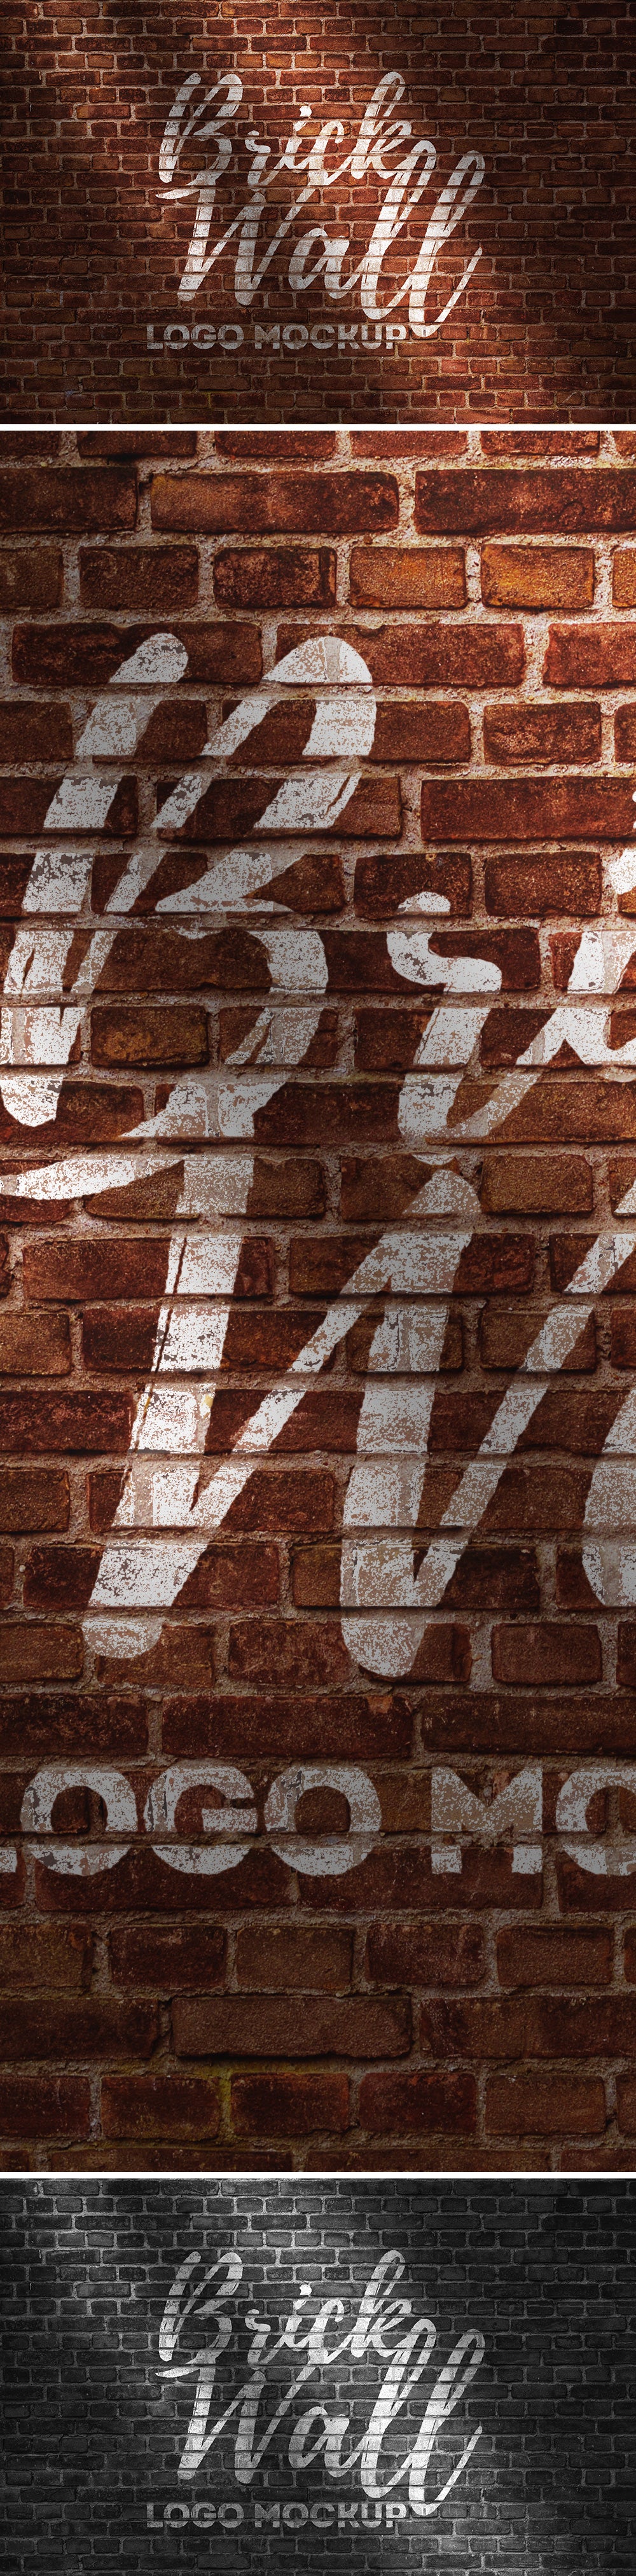 Free Brick Wall Logo Mockup